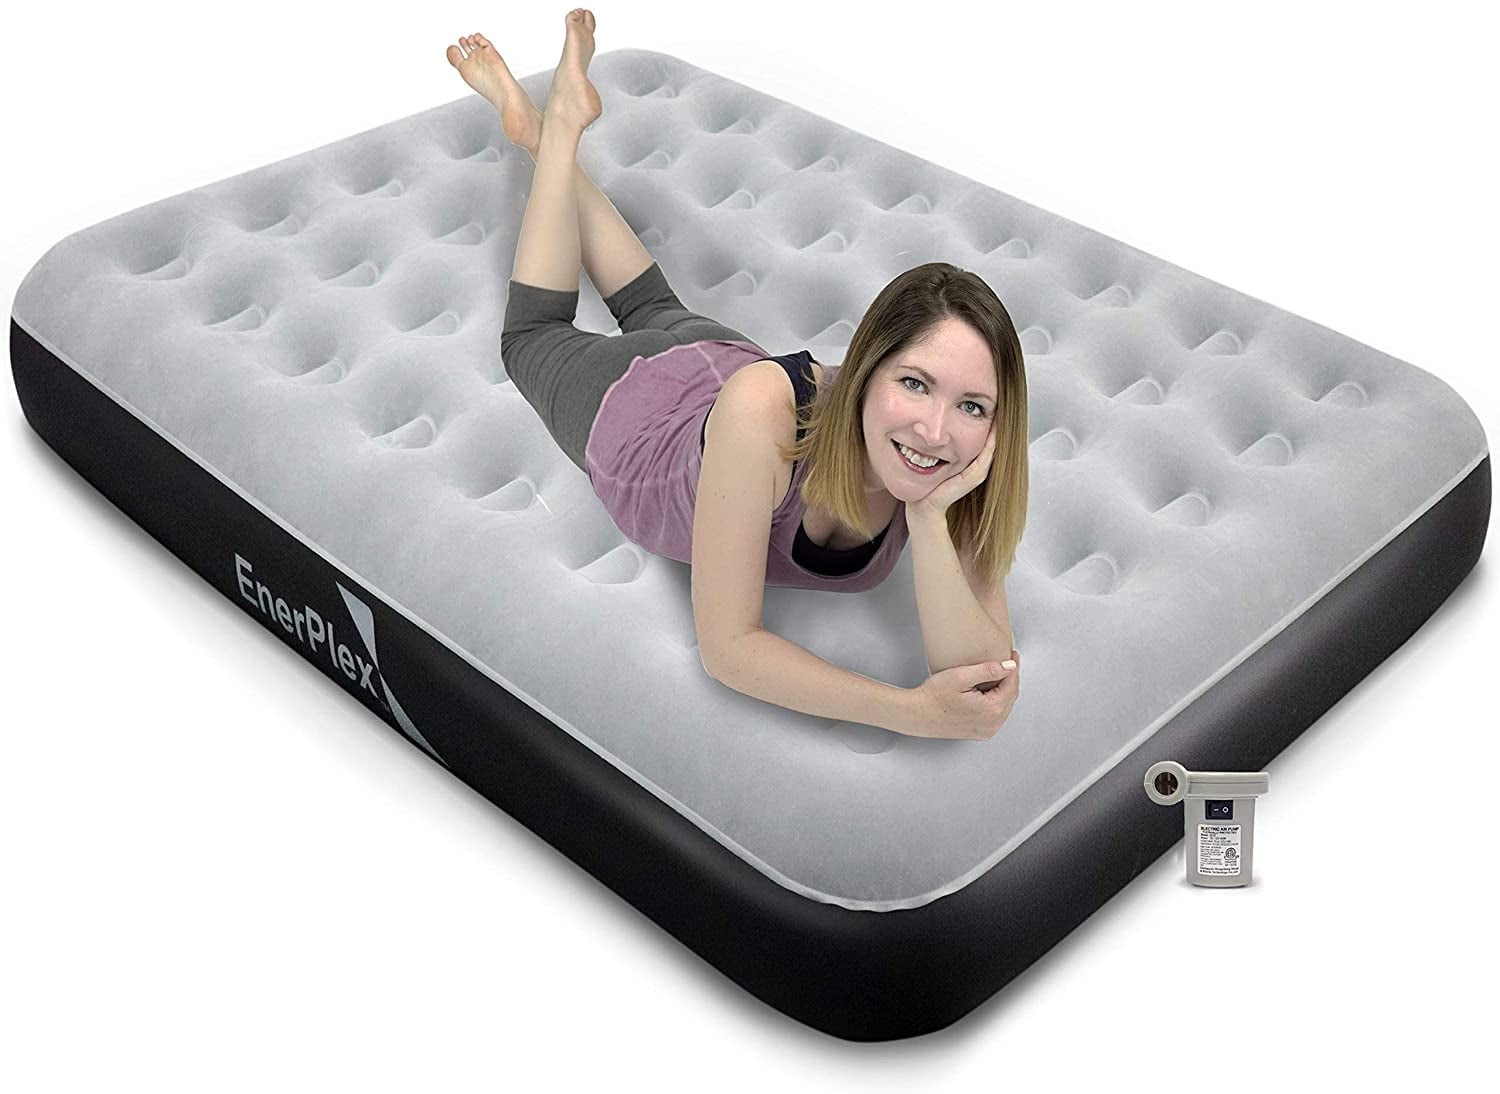 enerplex pillow top twin air mattress reviews